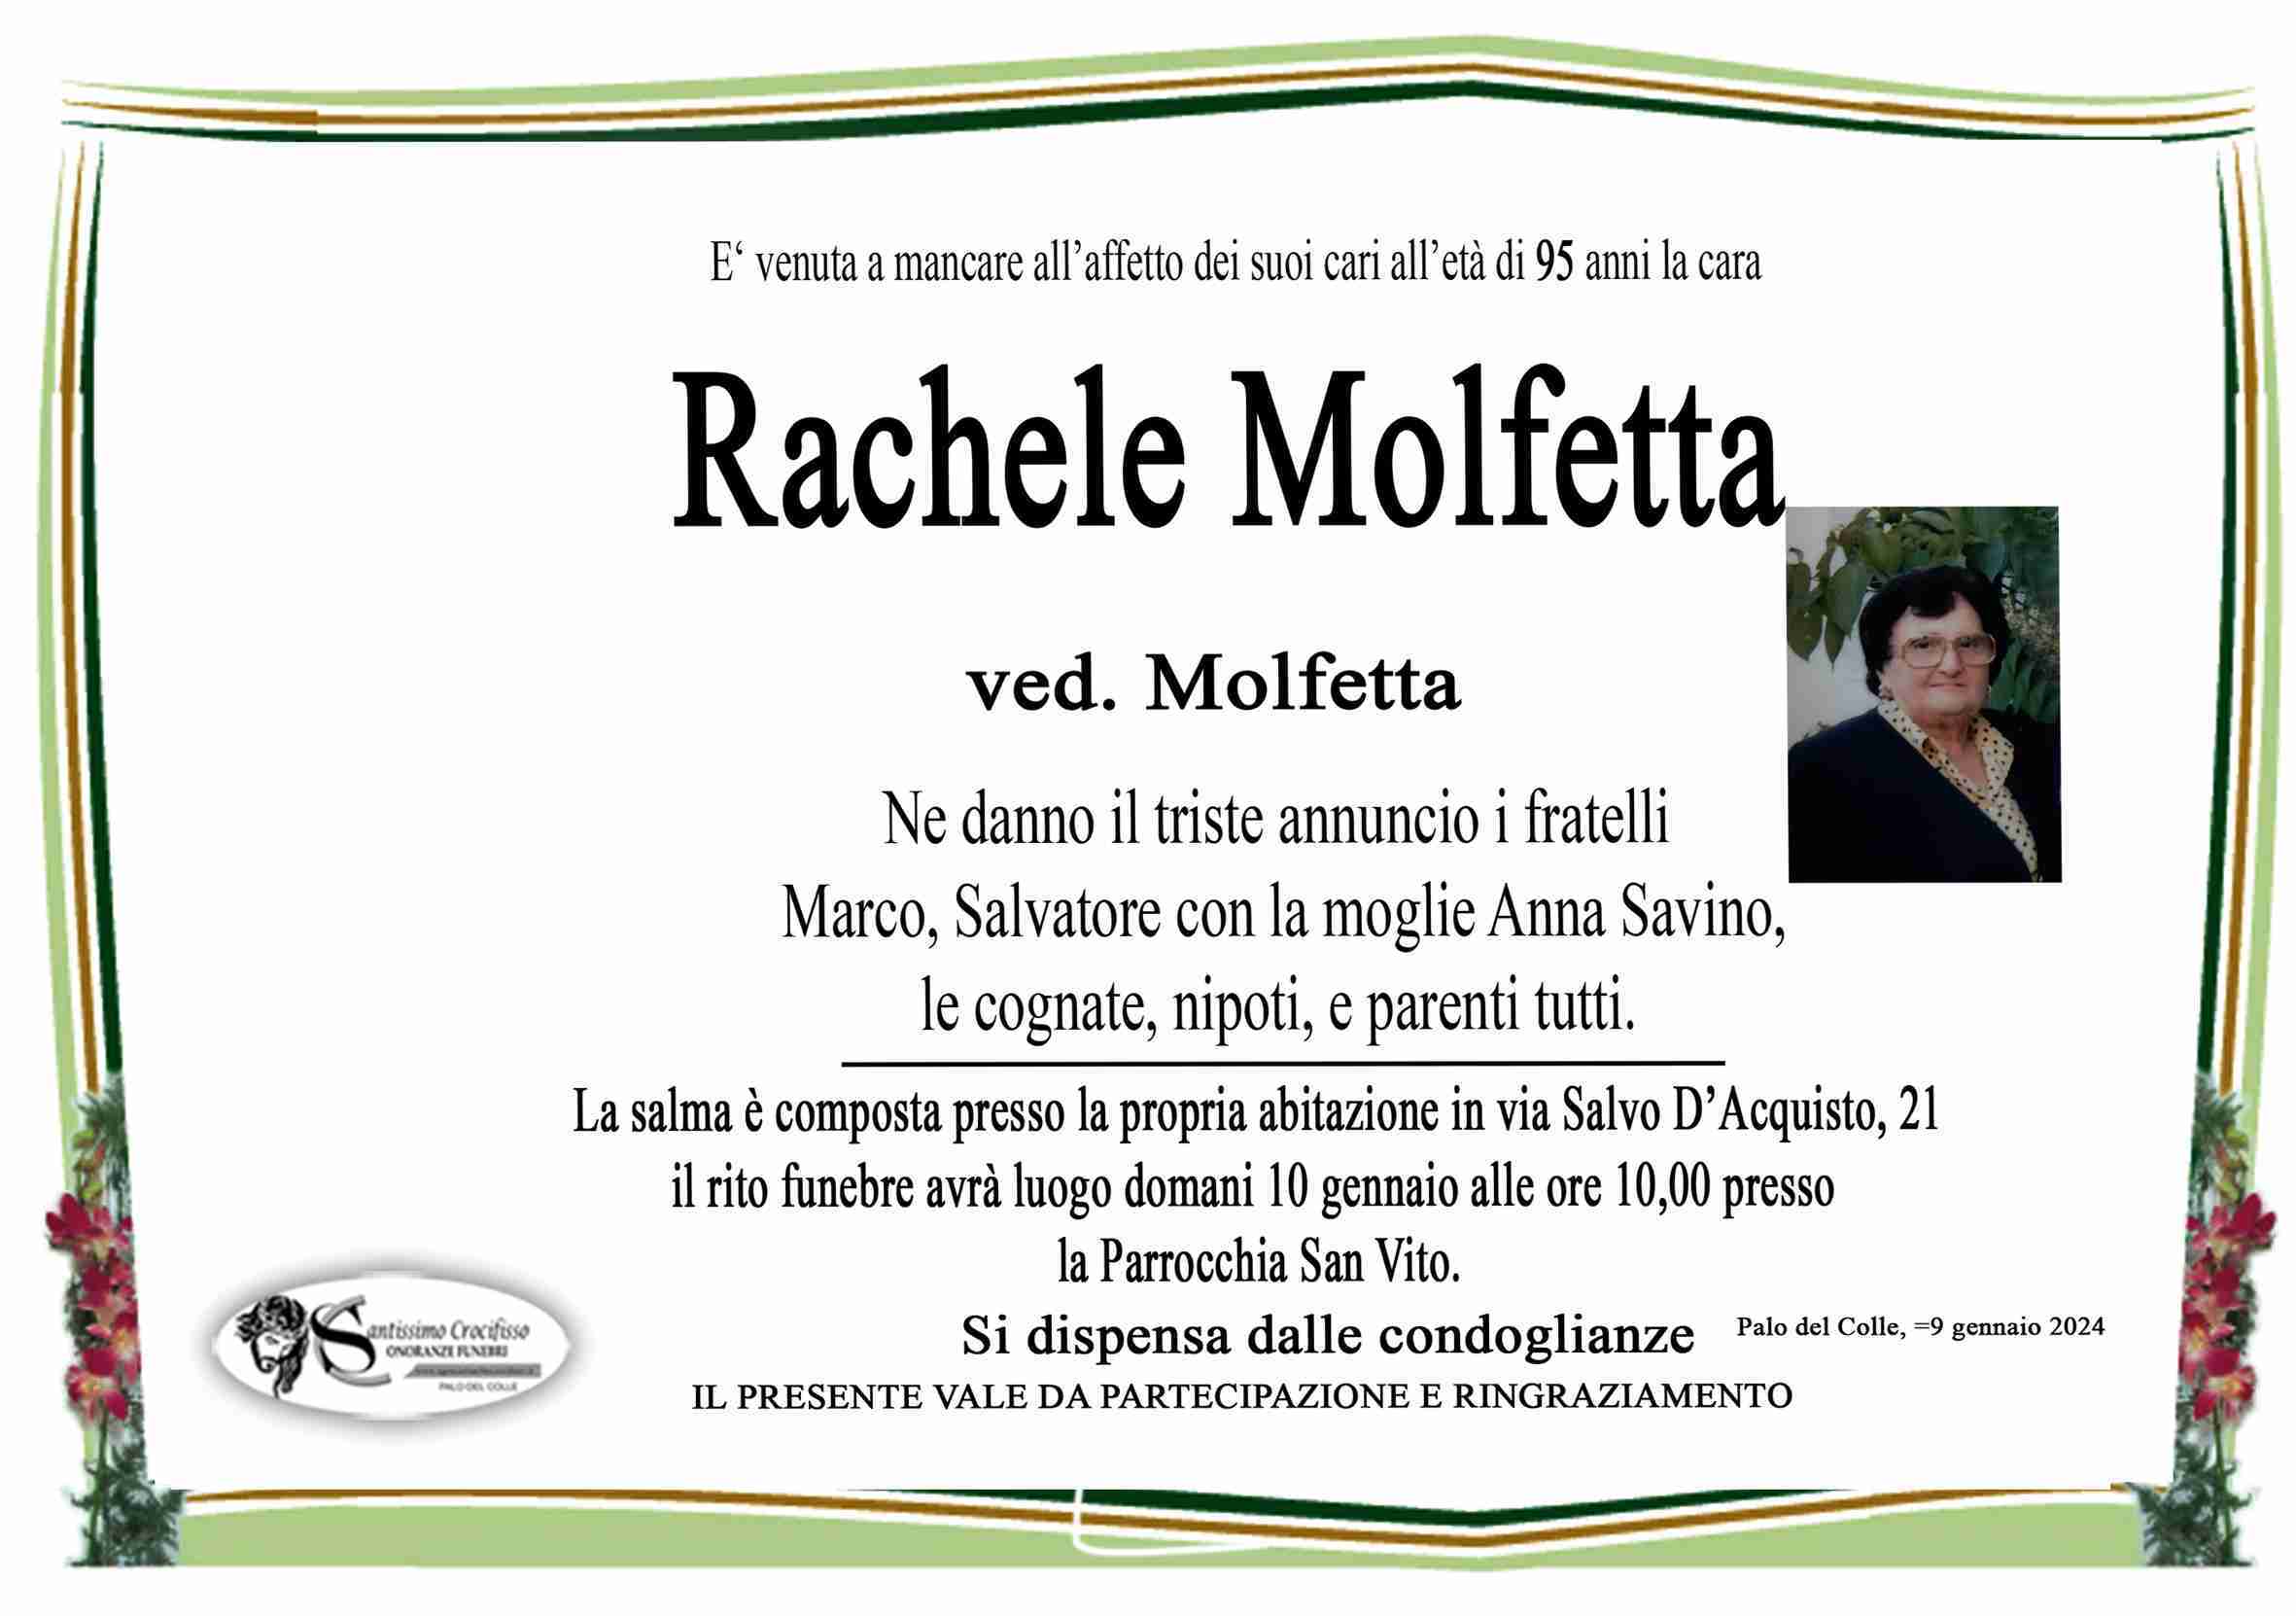 Rachele Molfetta